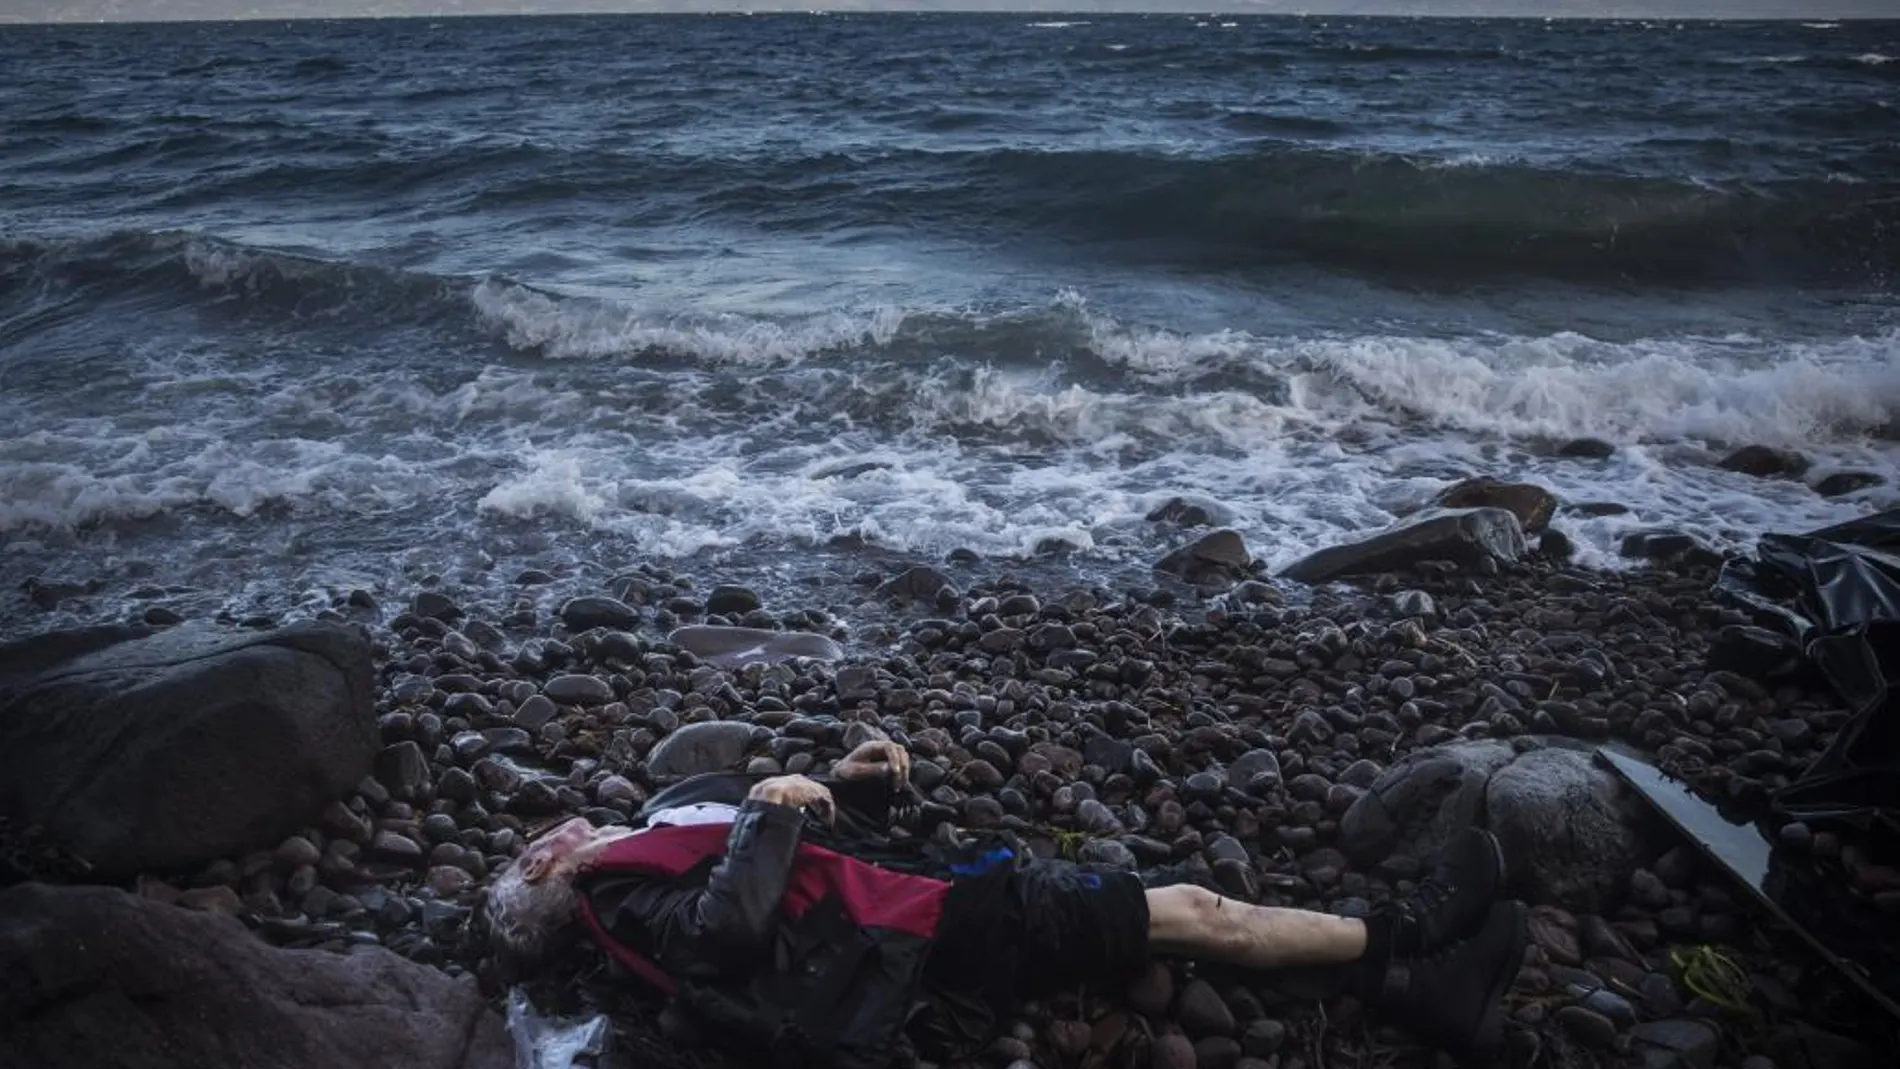 El cuerpo sin vida de un hombre es visto en una playa de Skala, en la isla griega de Lesbos, tras un naufragio el mes pasado